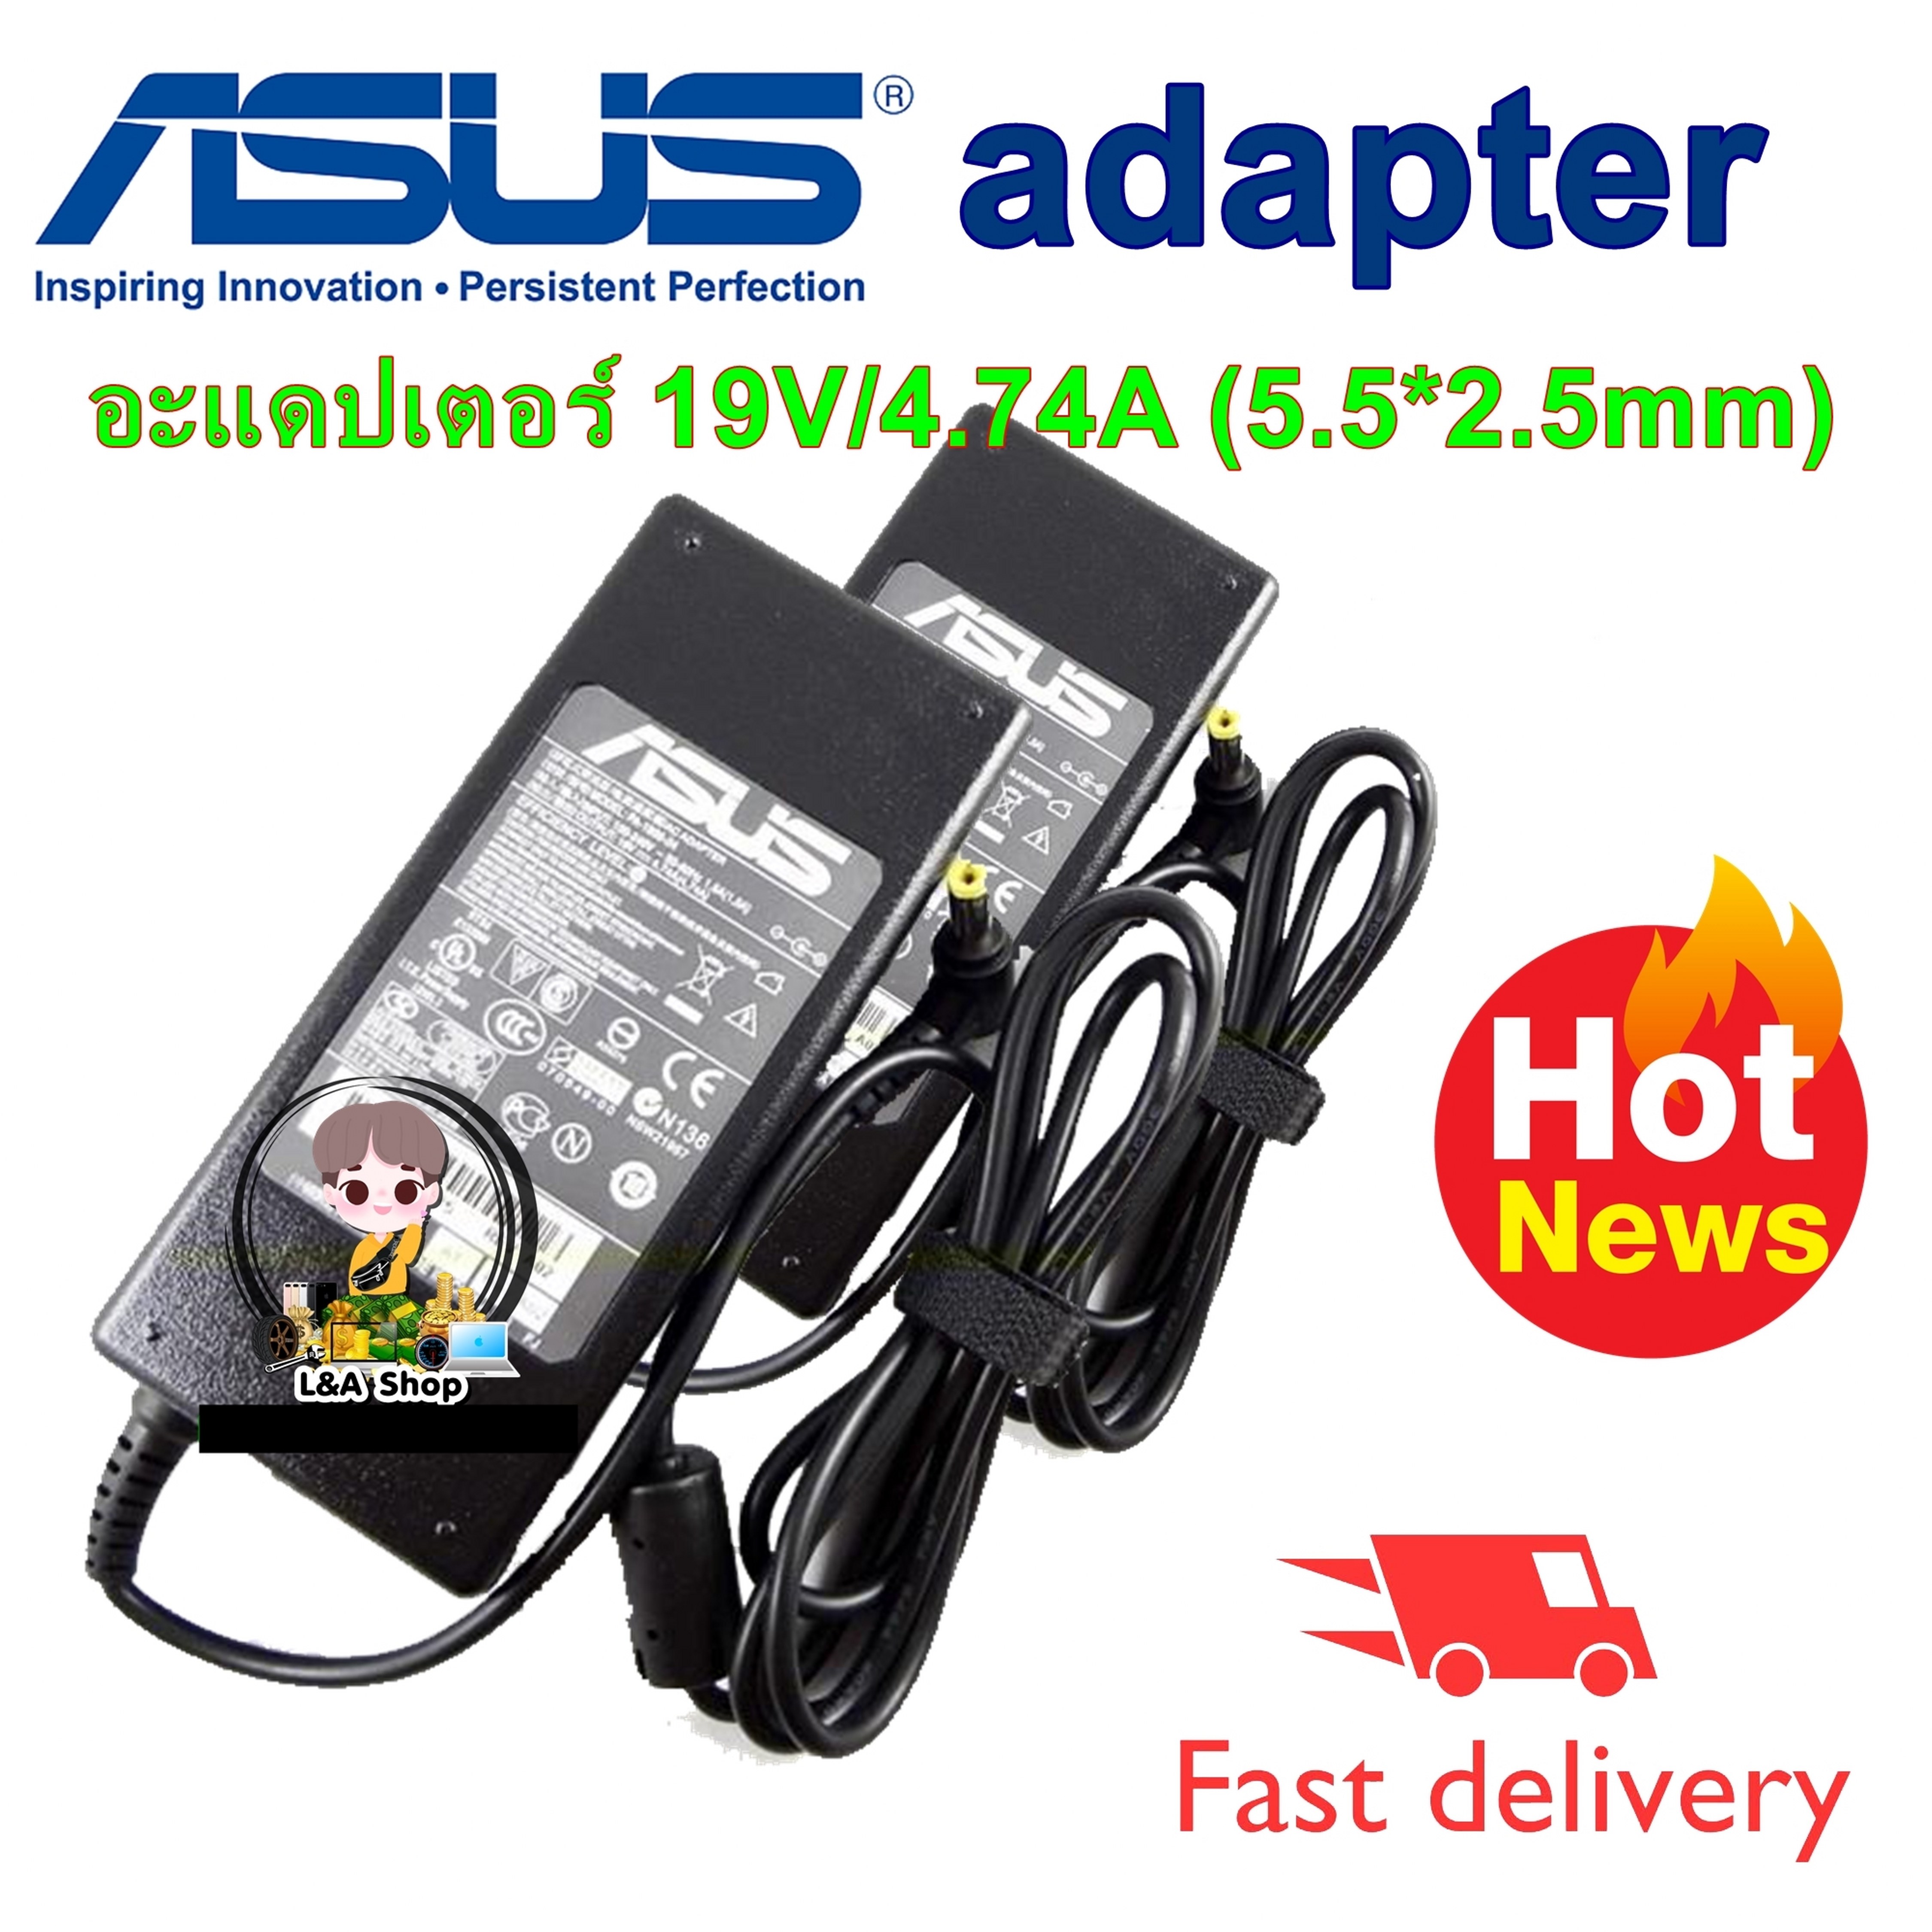 ASUS adapter อะแดปเตอร์ สายชาร์จโน๊ตบุ๊ค ASUS19V/4.74A (5.5*2.5mm)